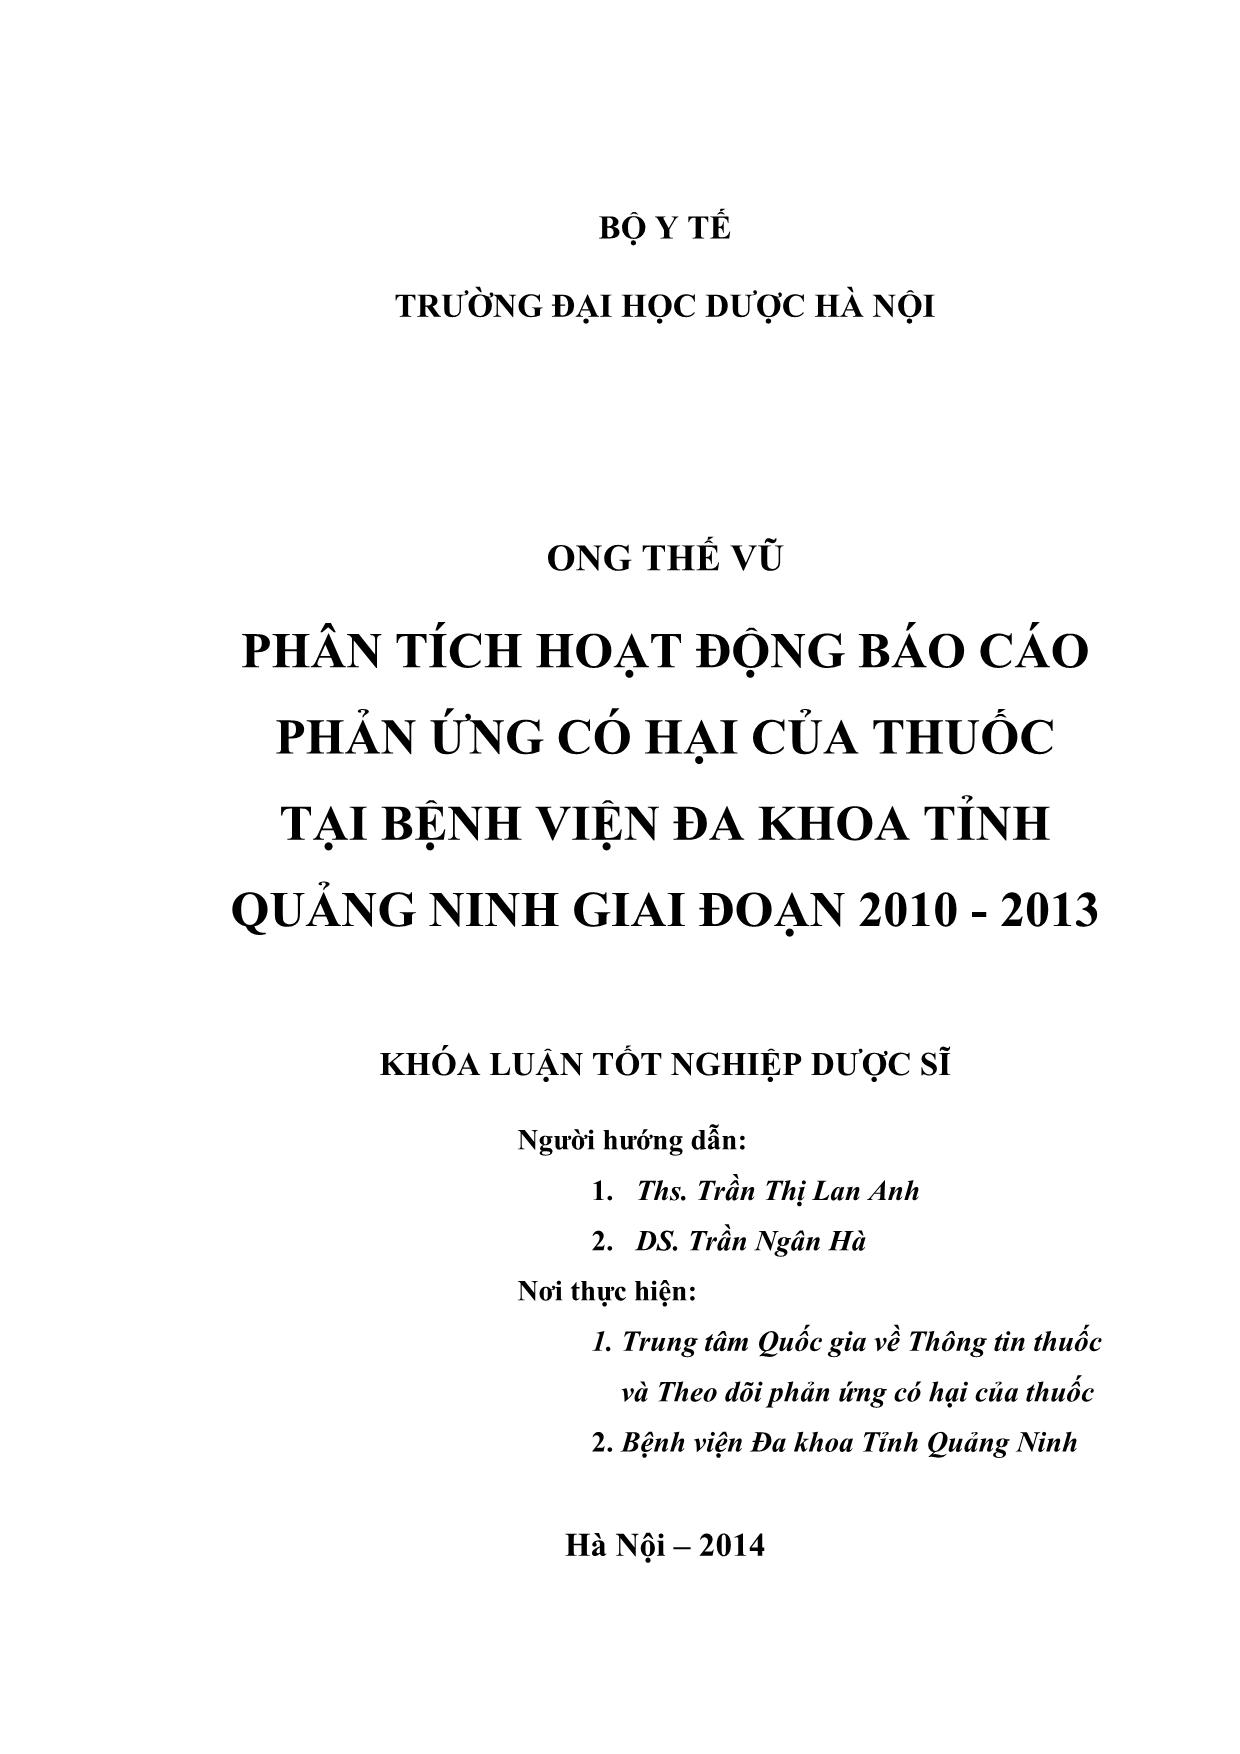 Phân tích hoạt động Báo cáo phản ứng có hại của thuốc tại bệnh viện đa khoa tỉnh Quảng Ninh giai đoạn 2010 - 2013 trang 2